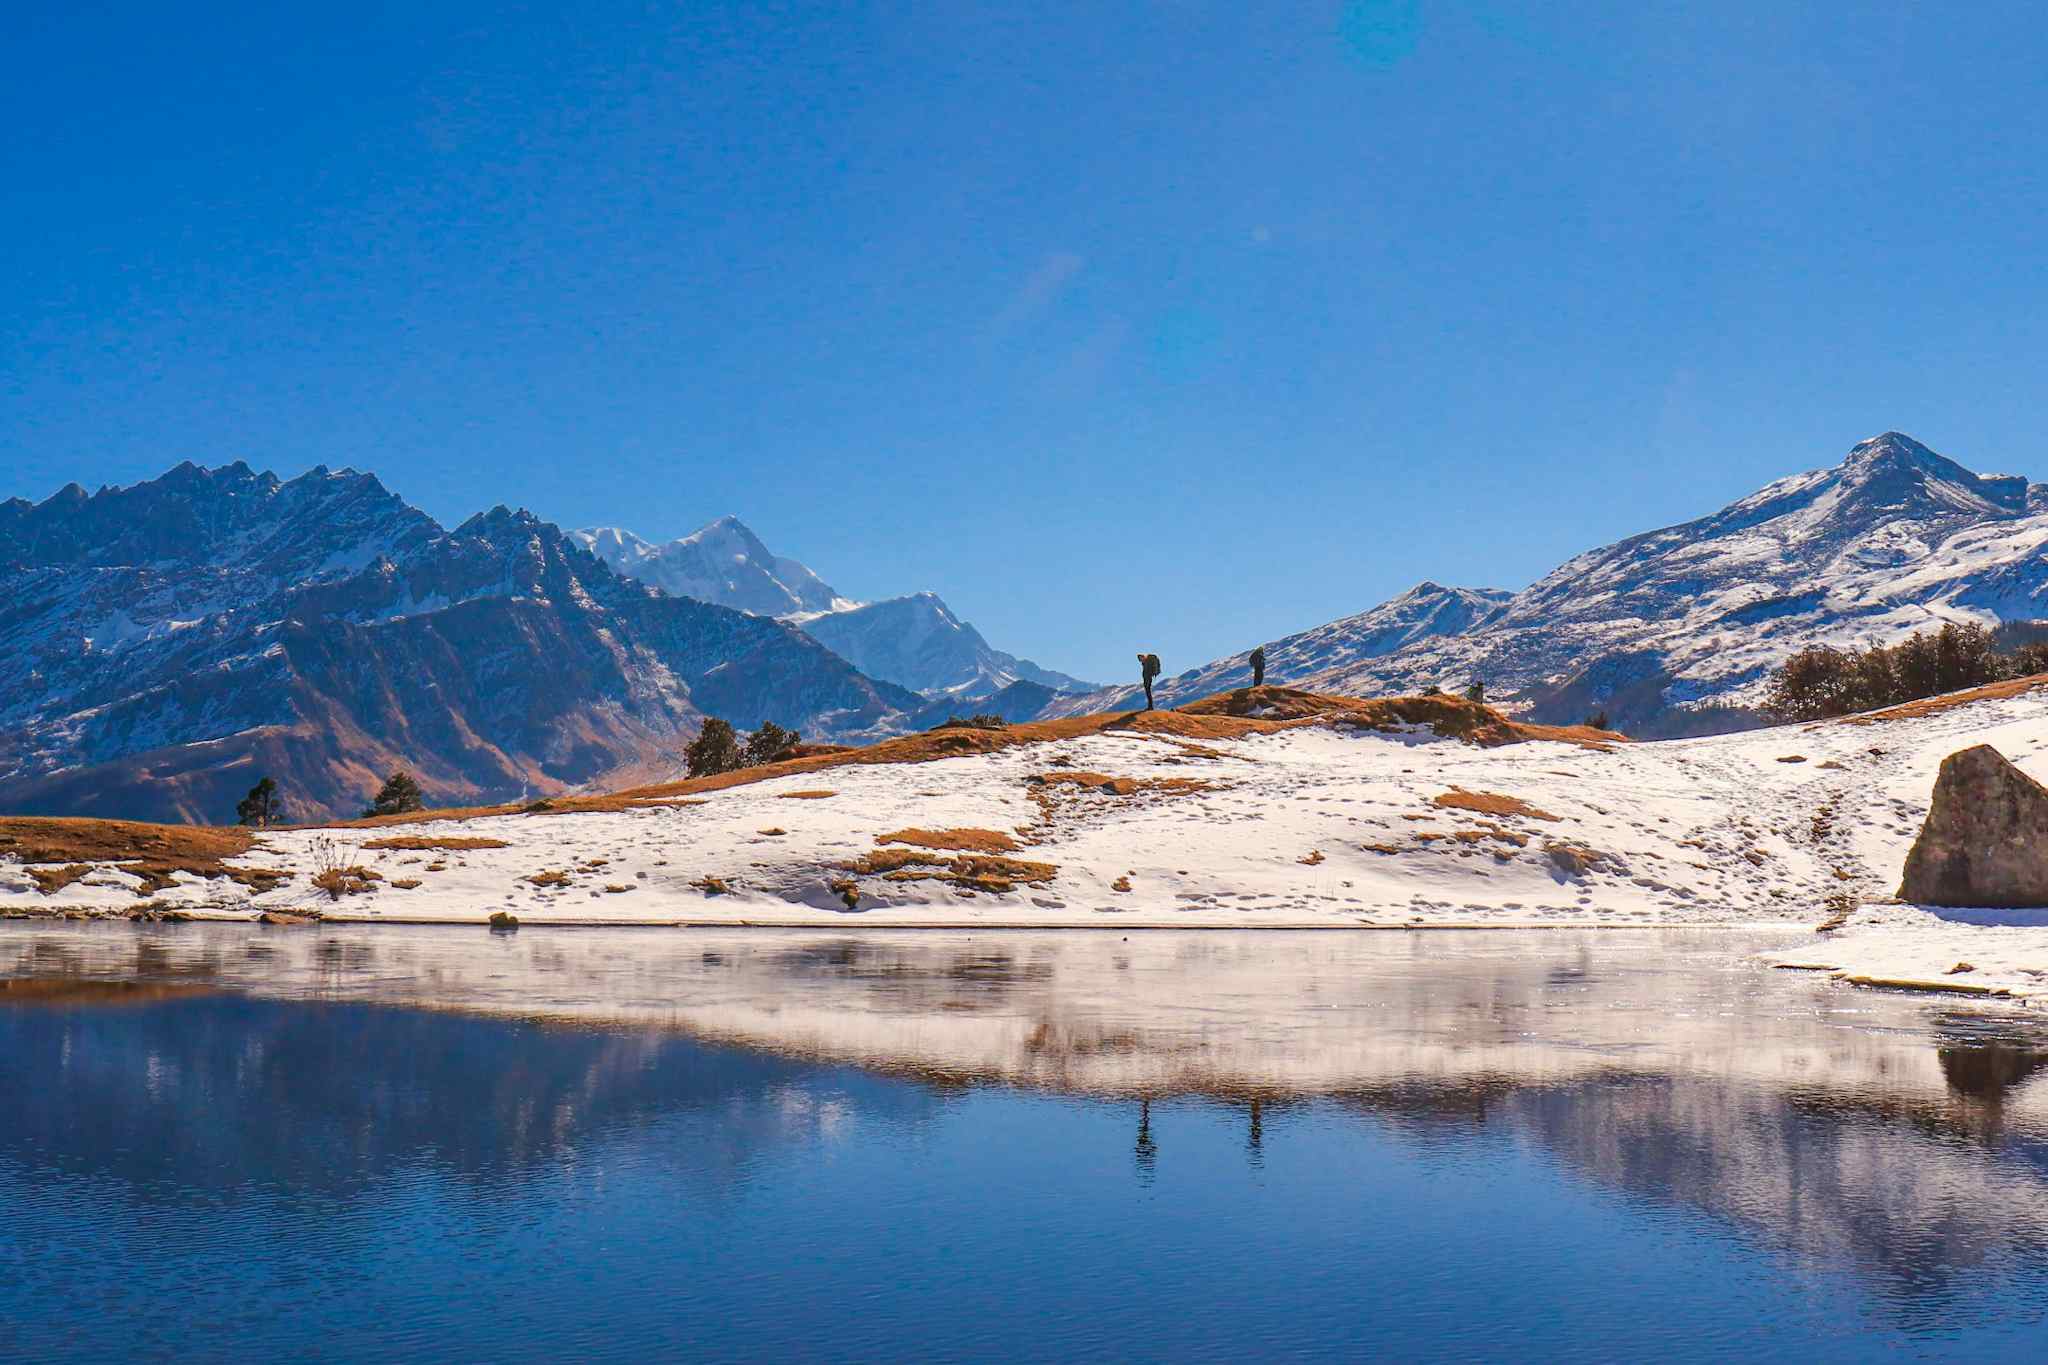 Himalayan view from the Kuari Pass Trek, India. Canva link: https://www.canva.com/photos/MAEJaLweQeU-himalayas-as-seen-during-the-kuari-pass-trek-india-/